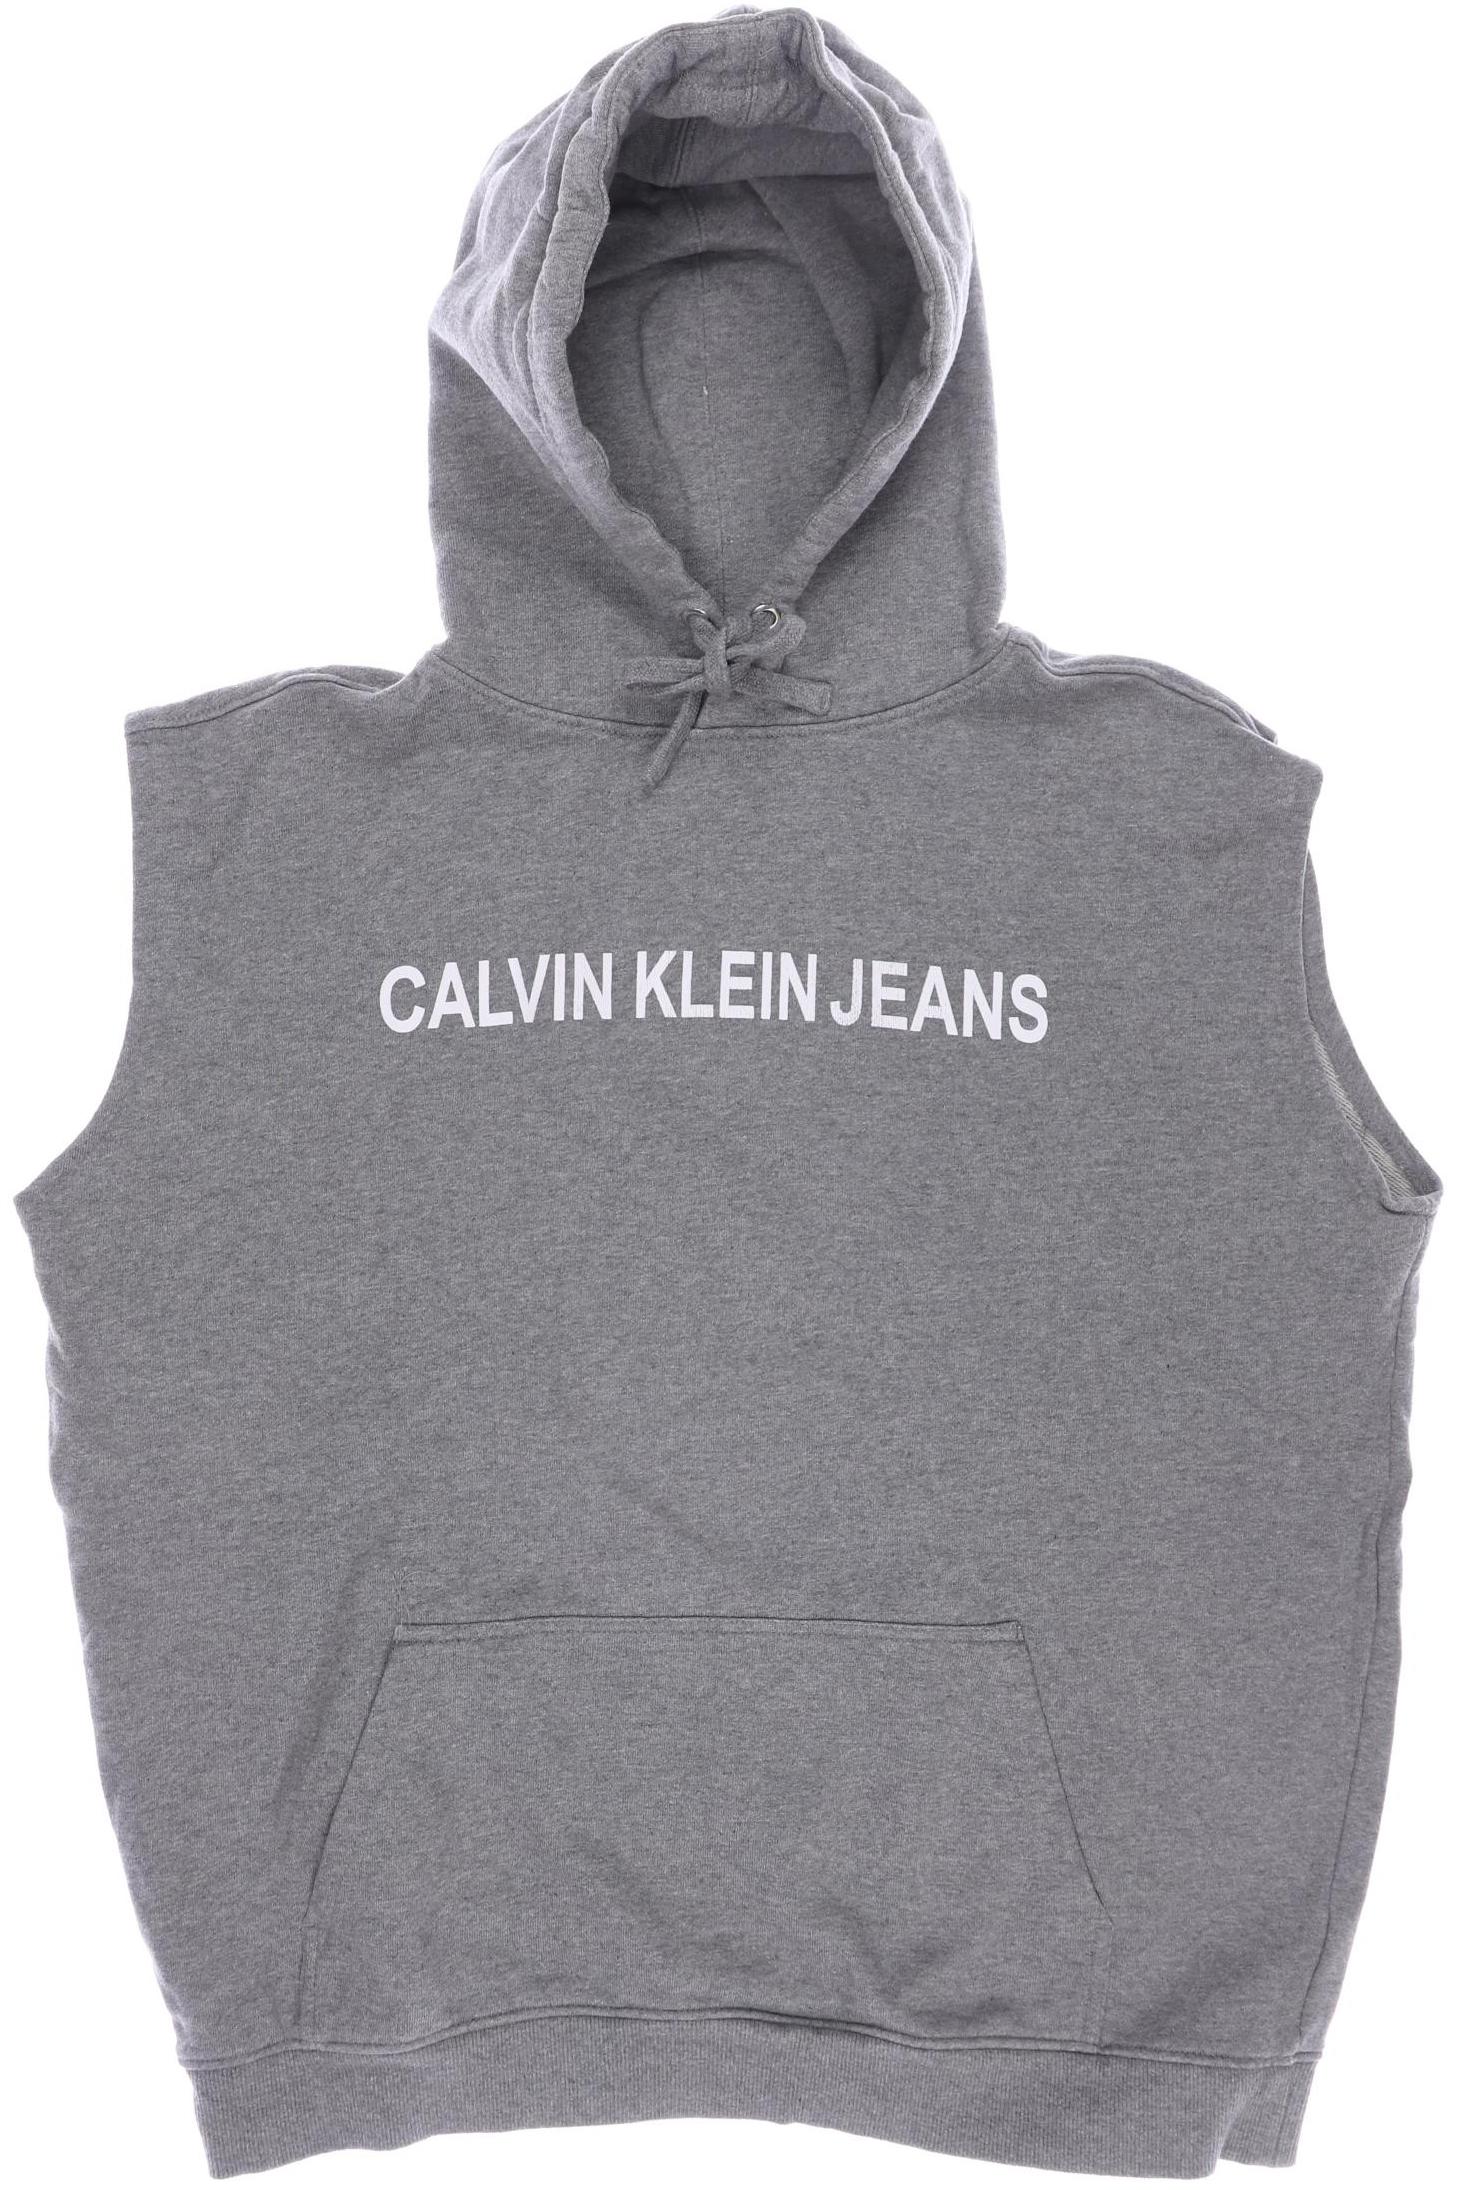 Calvin Klein Jeans Herren Kapuzenpullover, grau von Calvin Klein Jeans